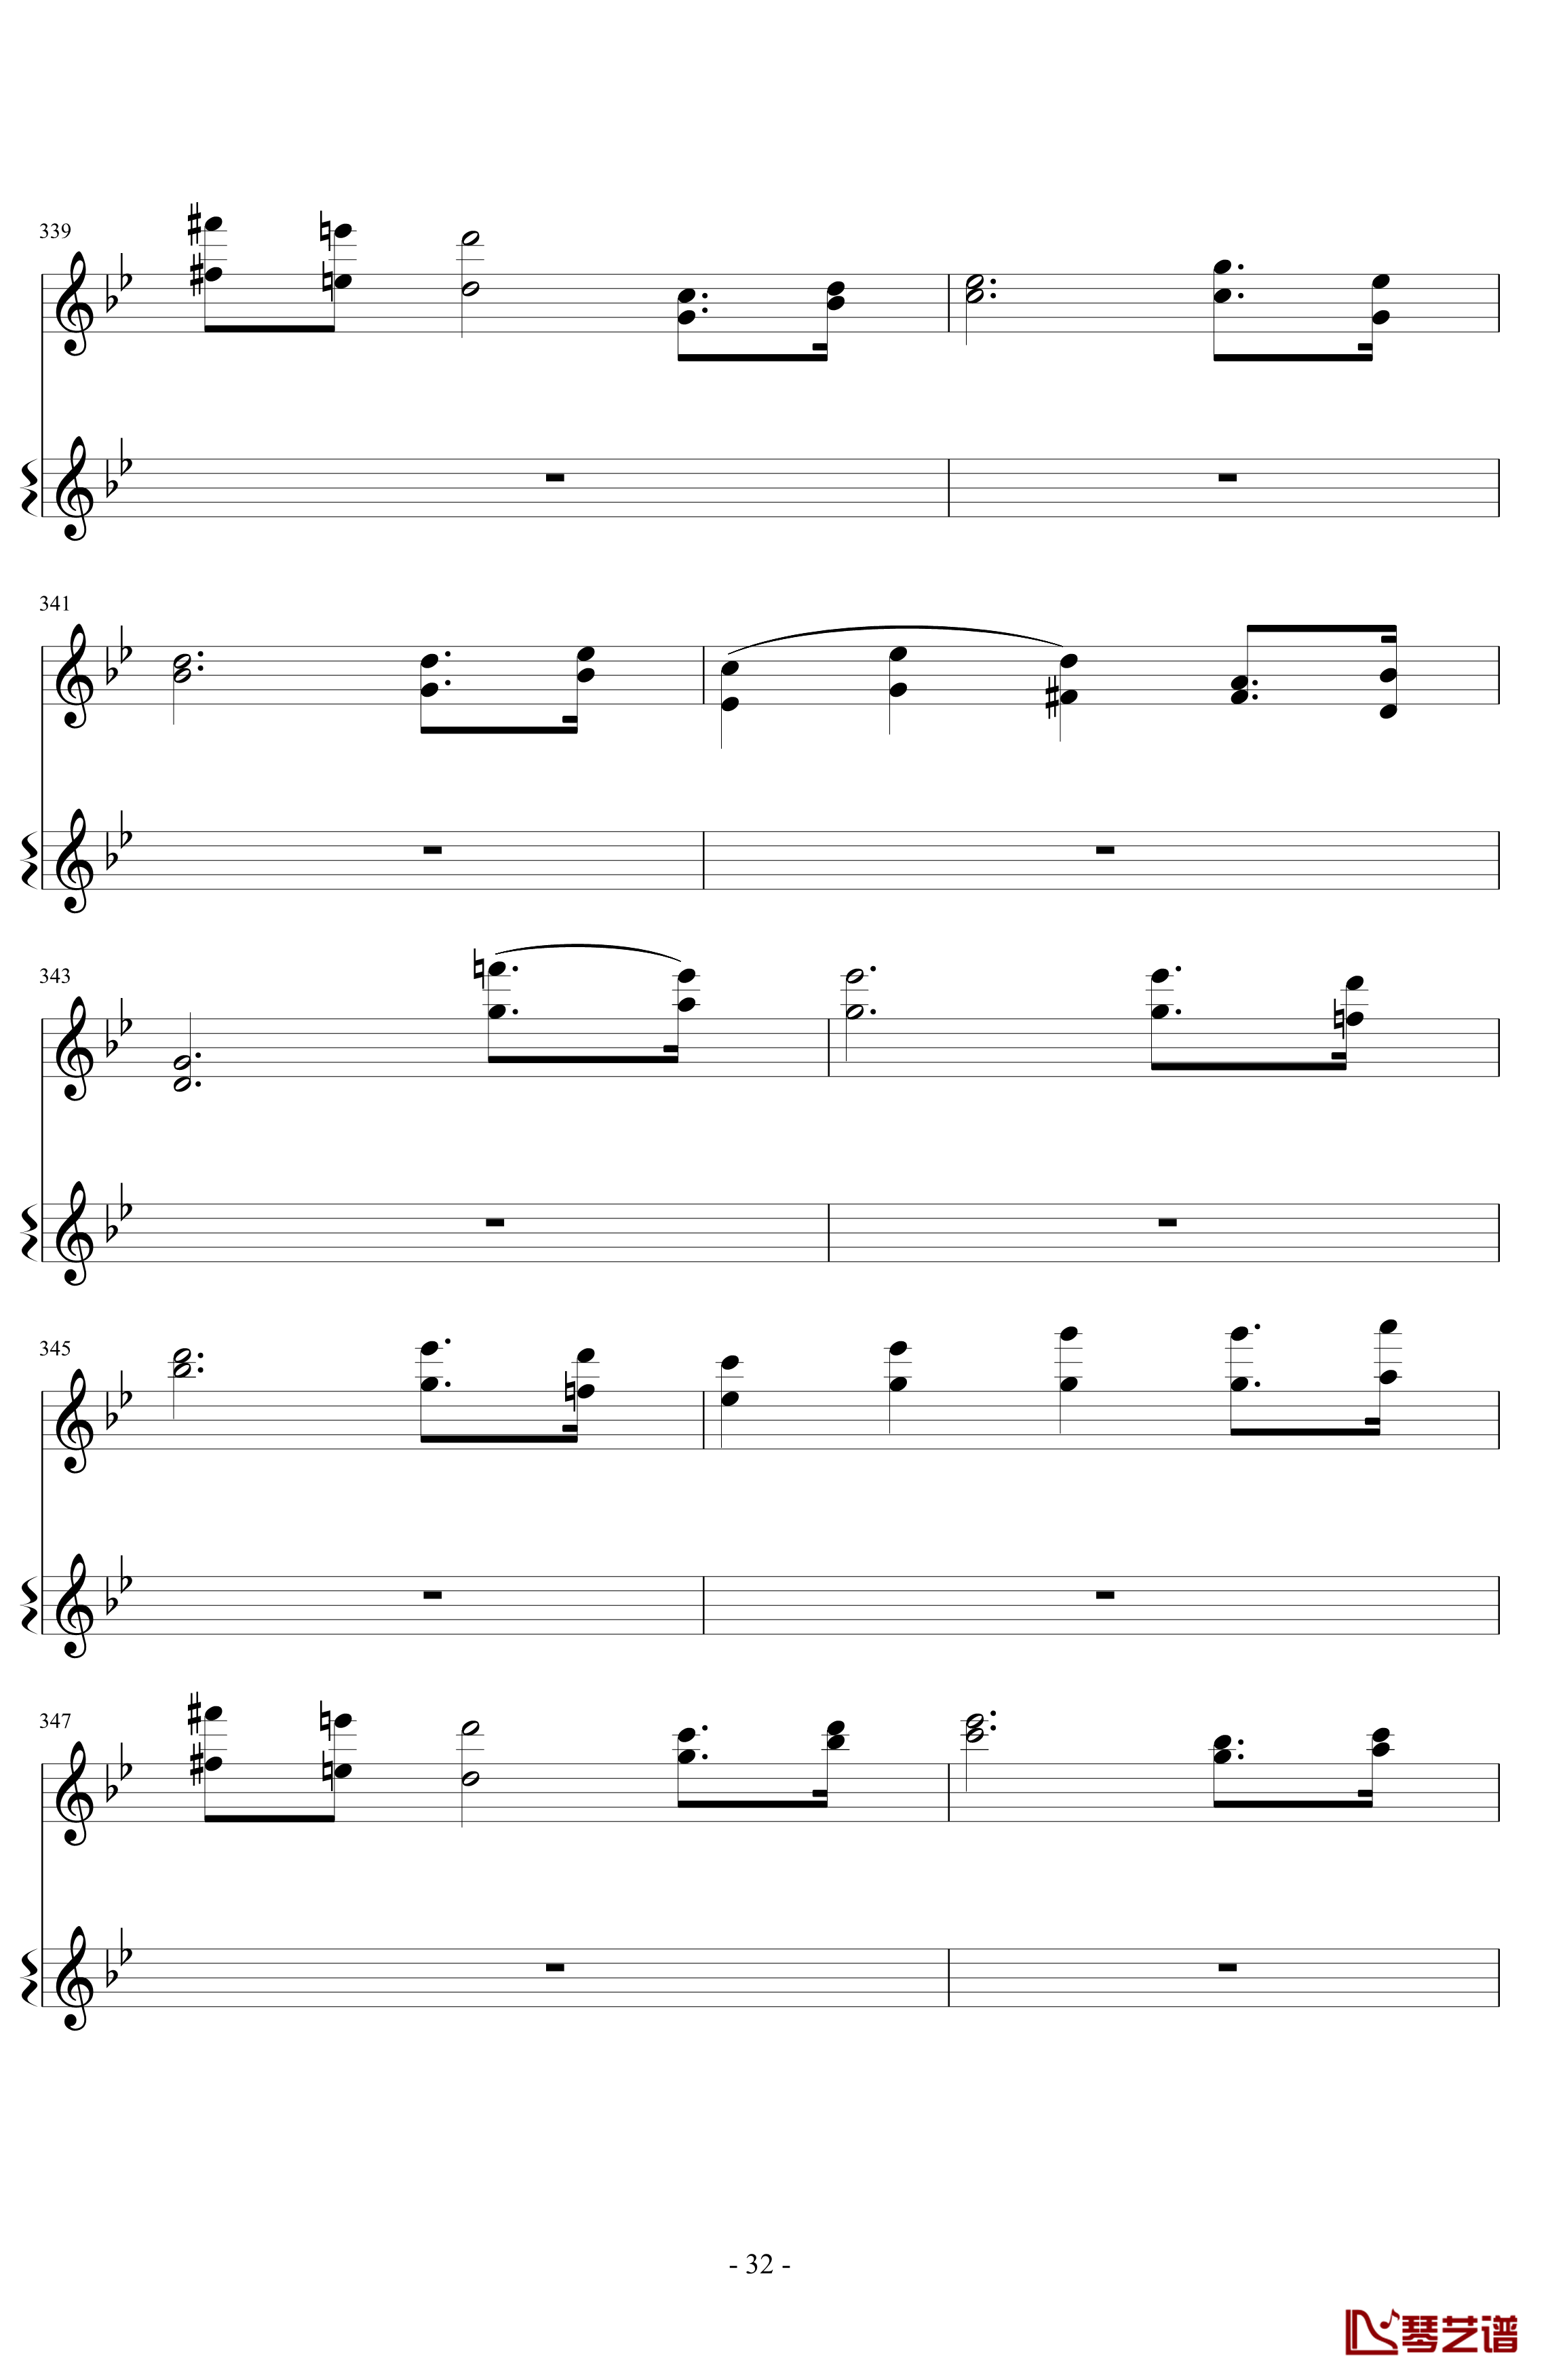 意大利国歌变奏曲钢琴谱-DXF32